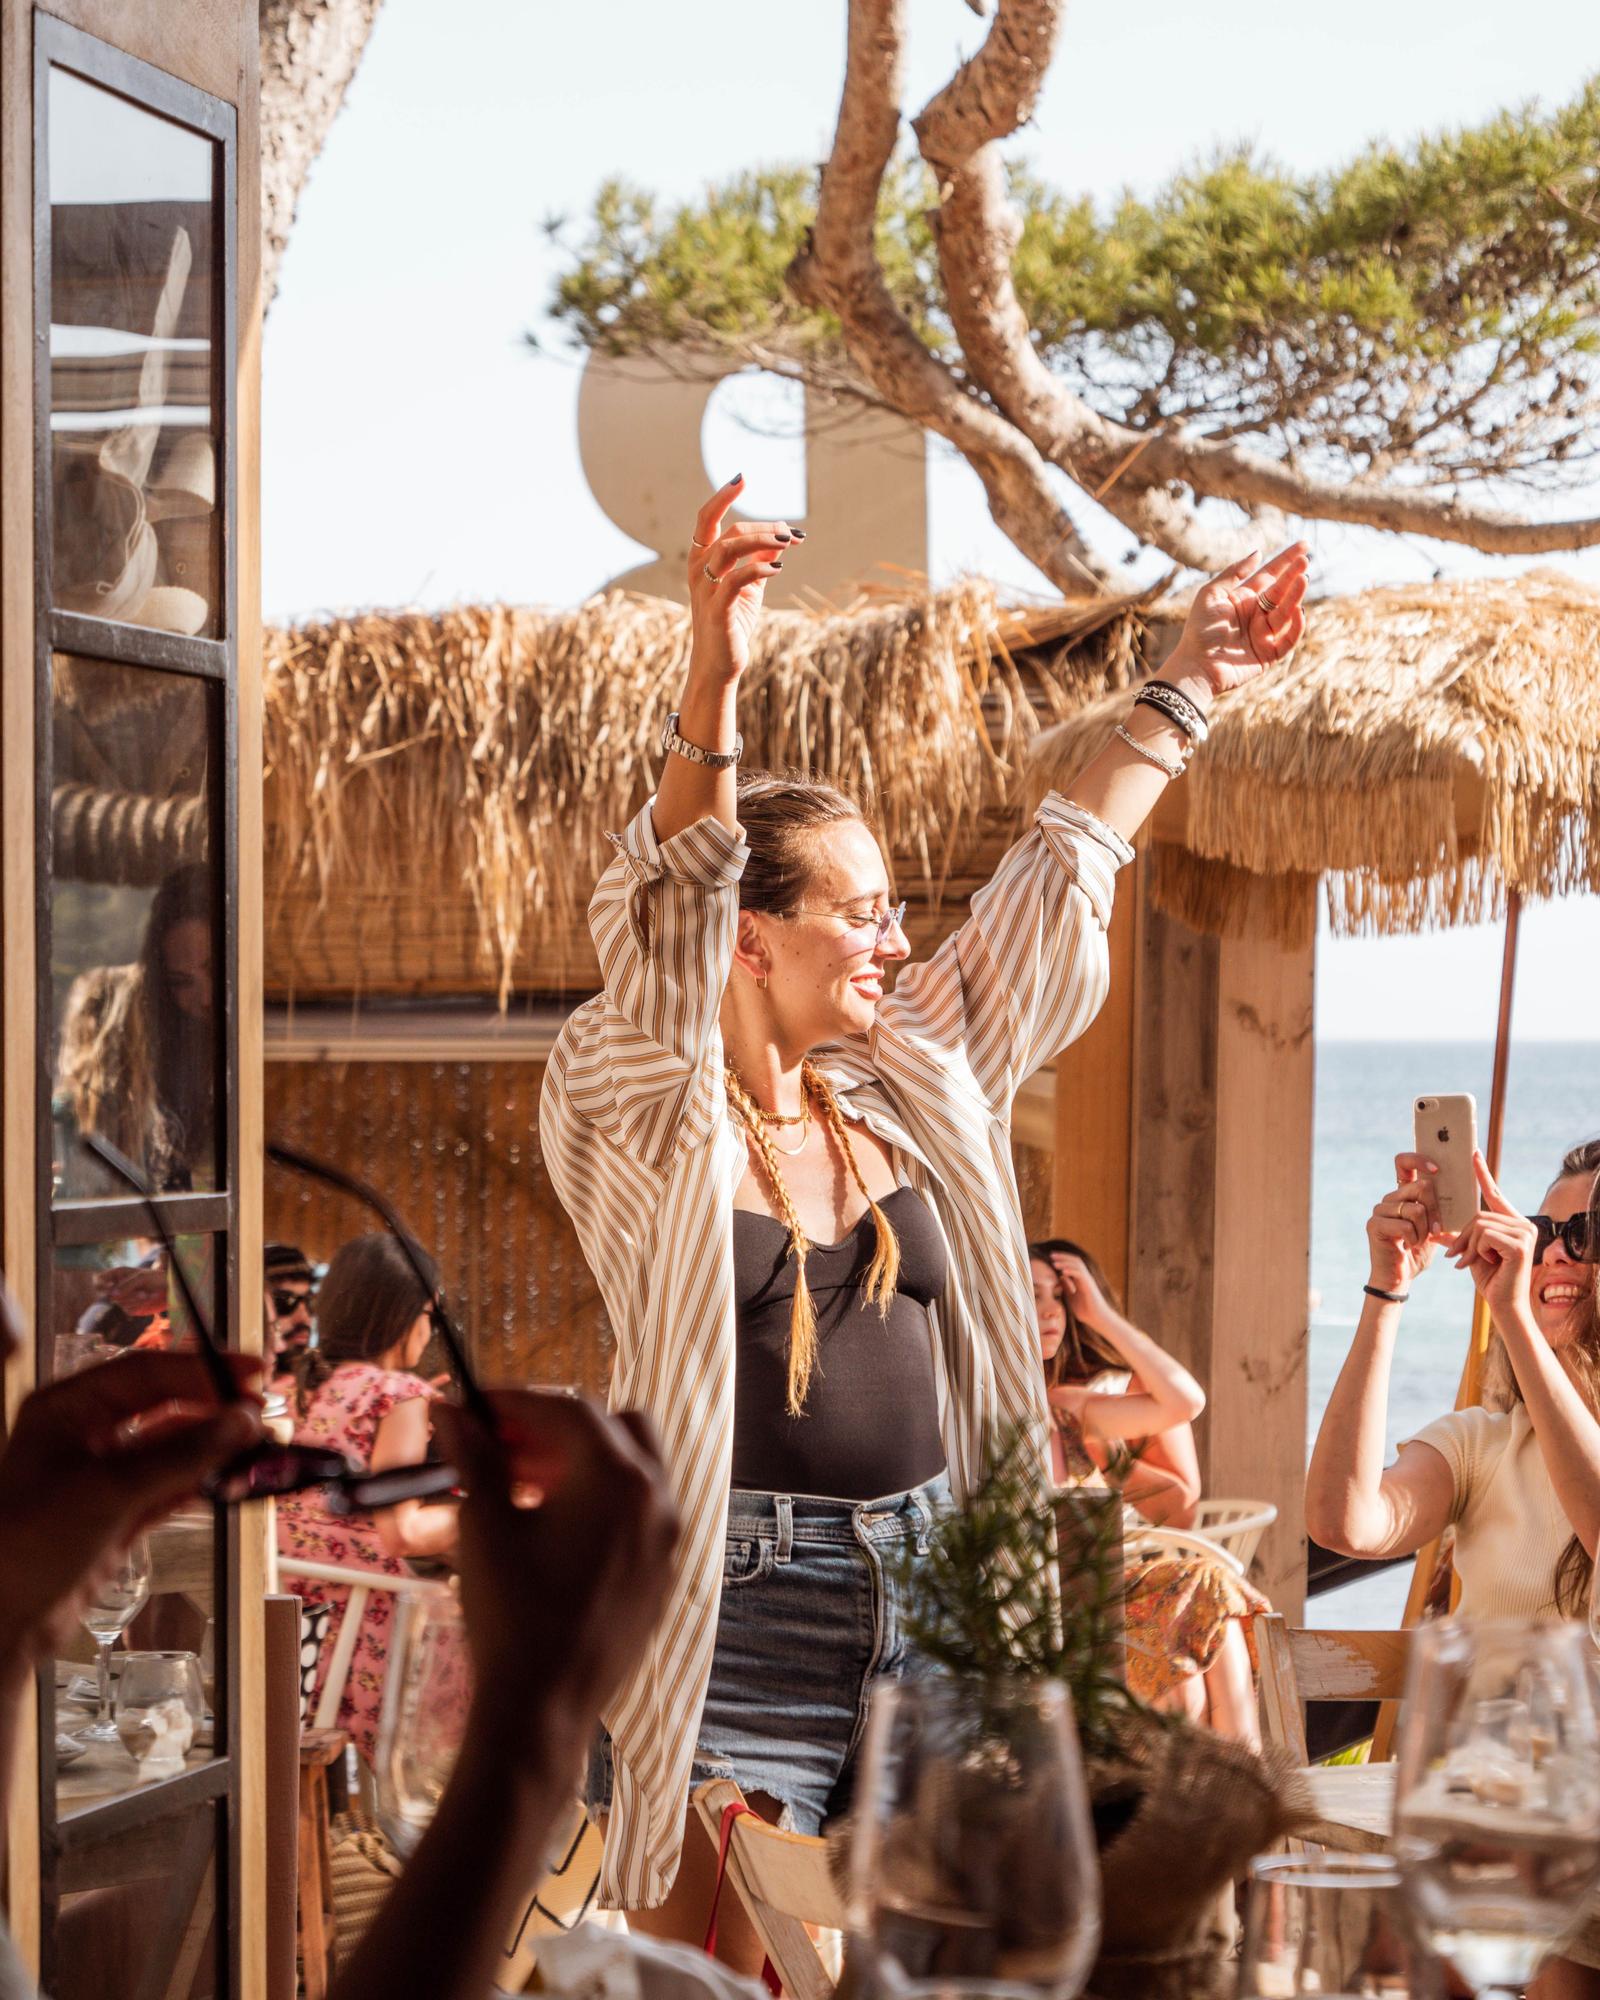 El buen ambiente y la diversión están asegurados en Beso Beach Ibiza.